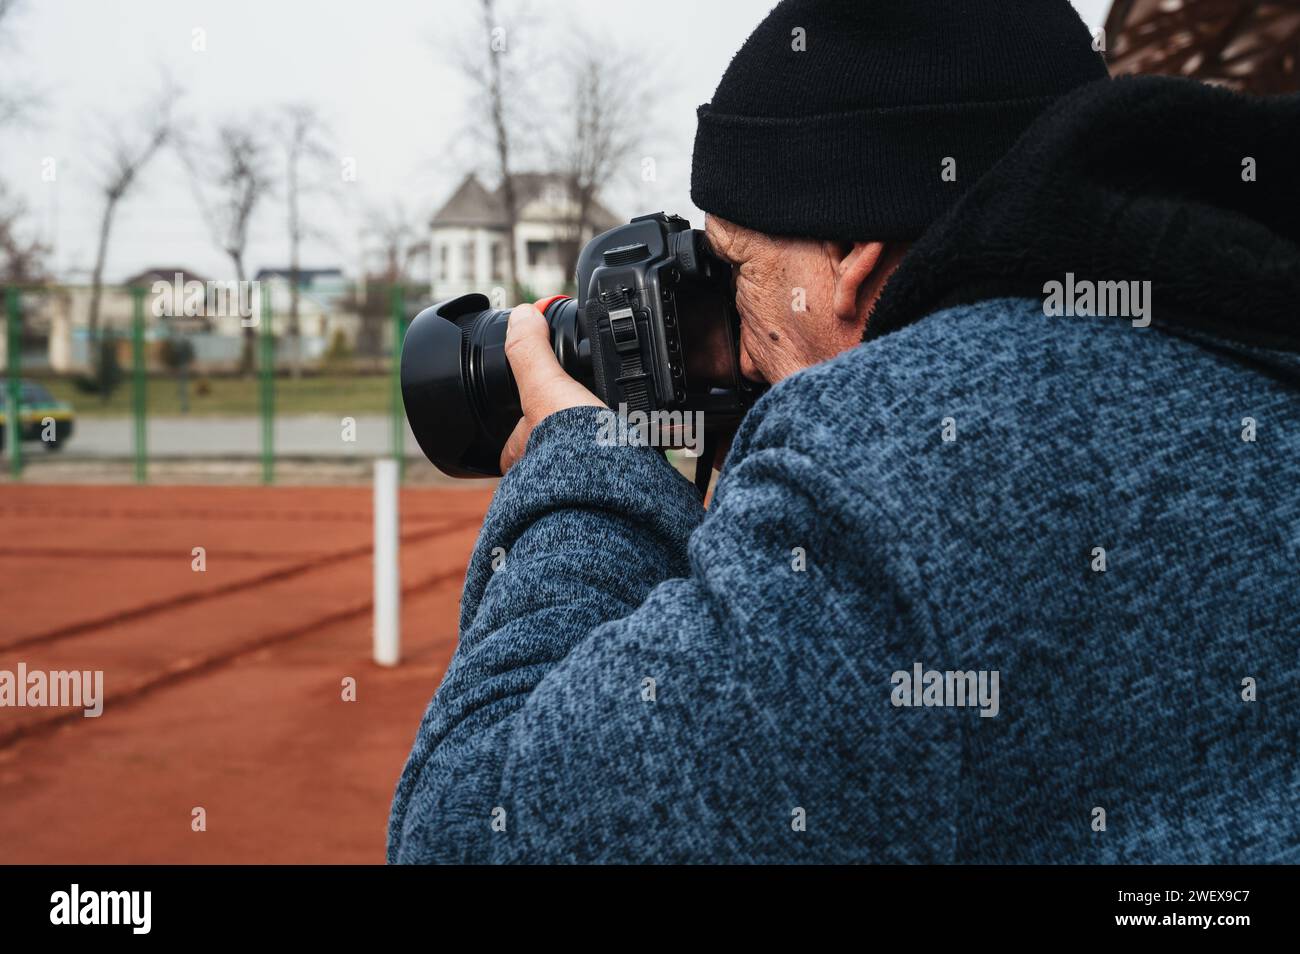 Ein älterer Mann, professioneller Reporter, Sportfotograf, fotografiert einen Wettkampf auf einem Tennisplatz. Fotograf mit einer digitalen, modernen Kamera in der Hand Stockfoto